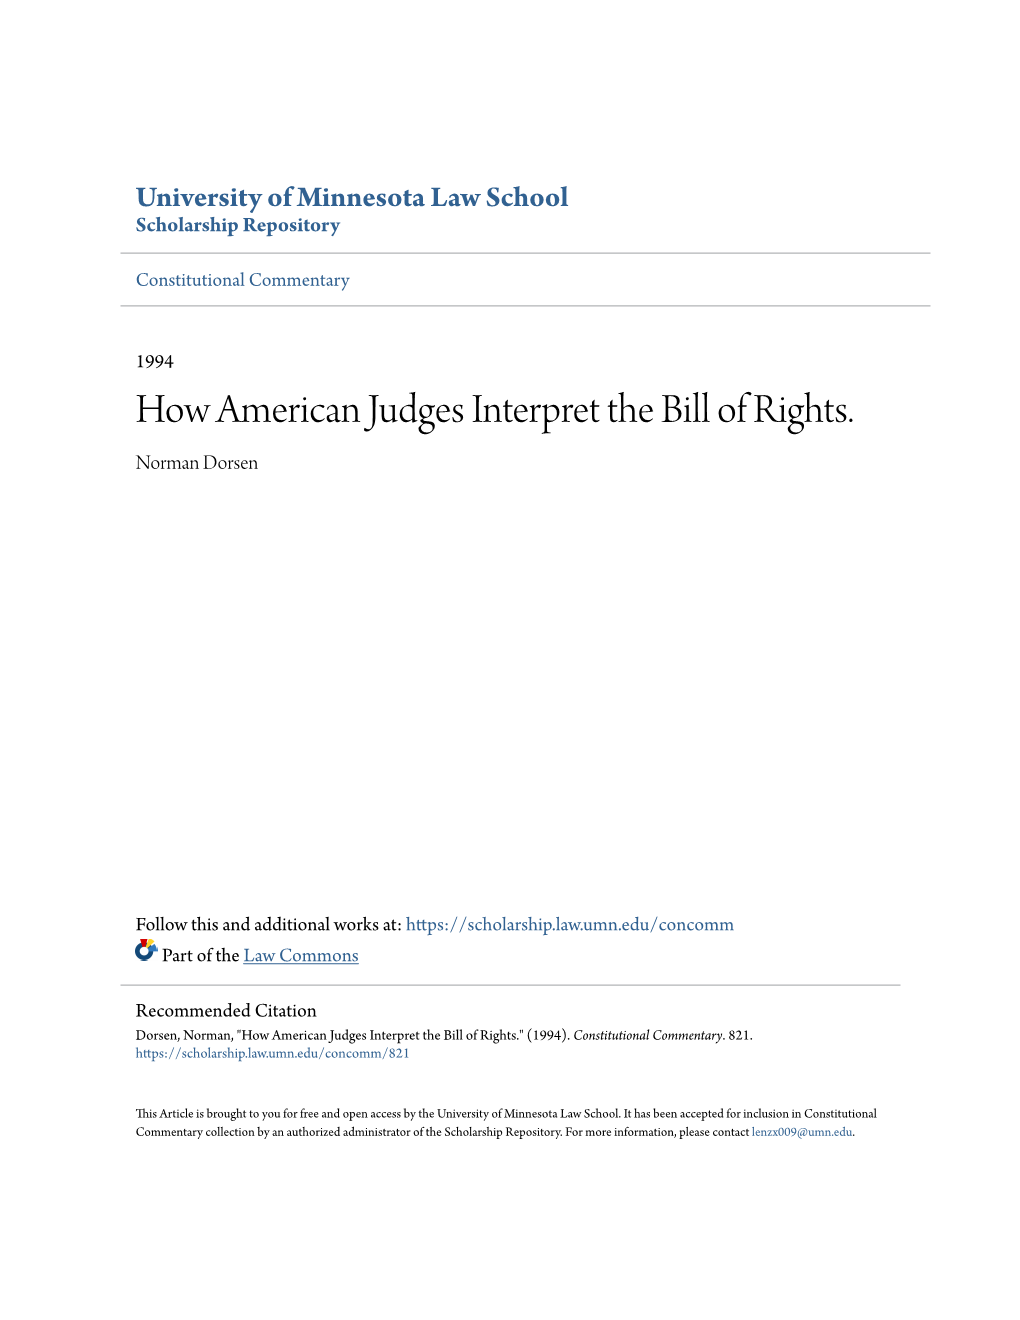 How American Judges Interpret the Bill of Rights. Norman Dorsen